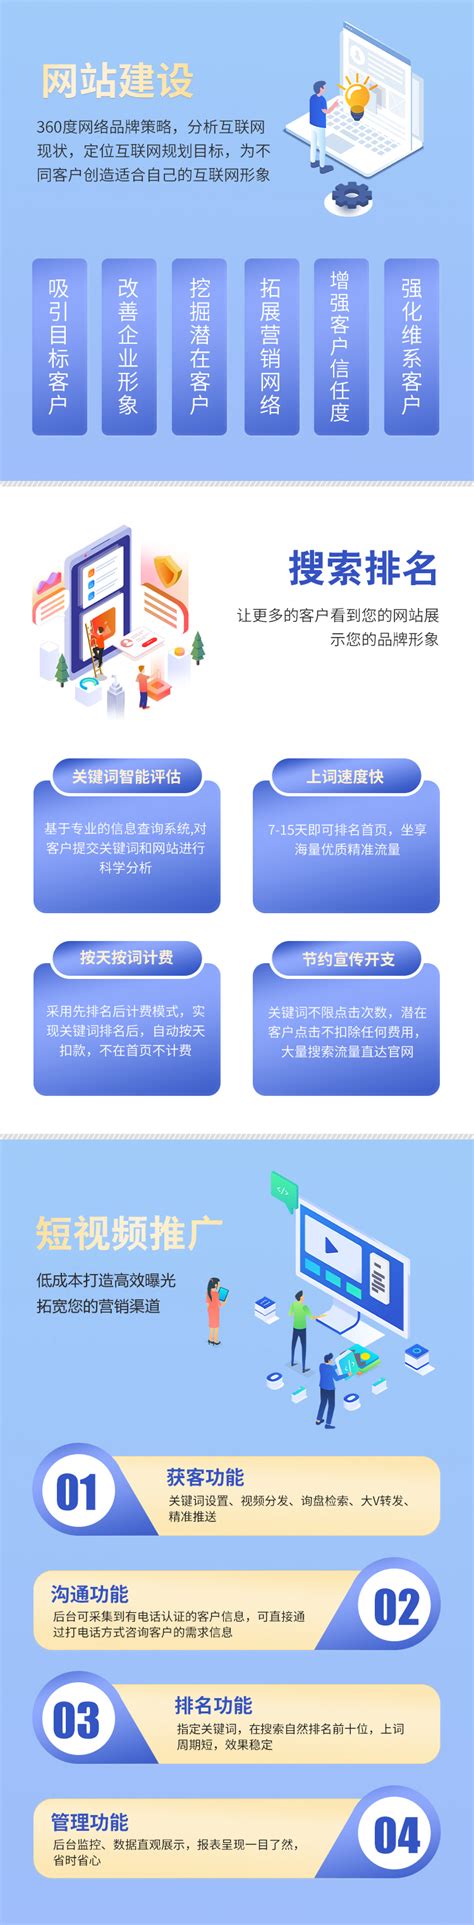 贵州网站建设管理模式